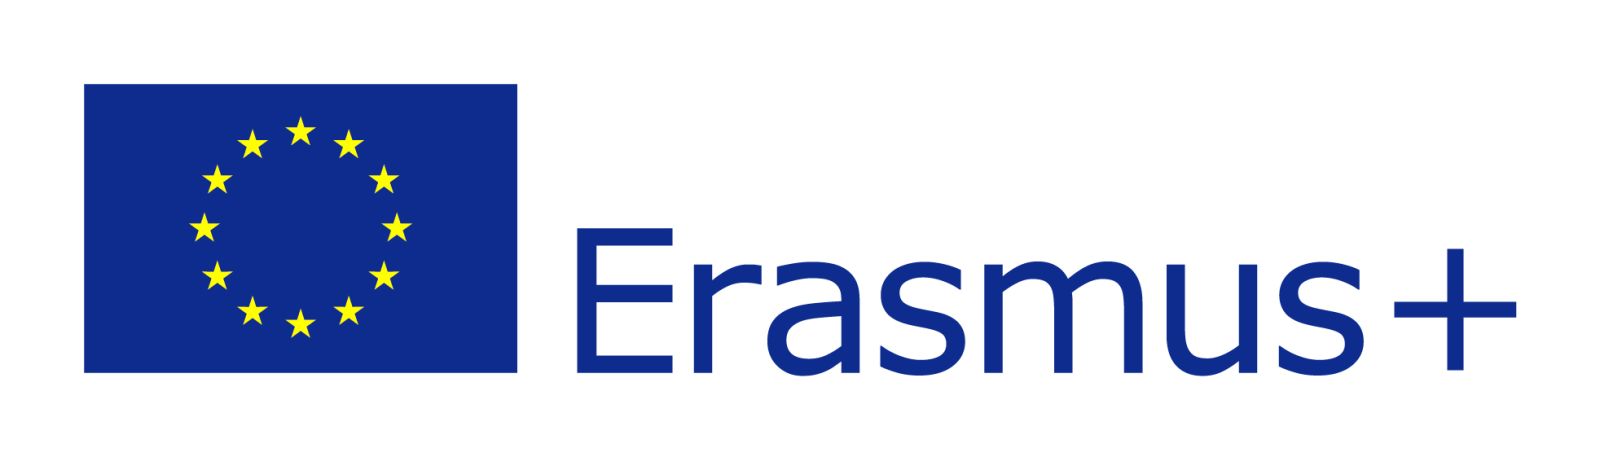 EU-flag-Erasmus%2B_vect_POS-a947efac.jpg